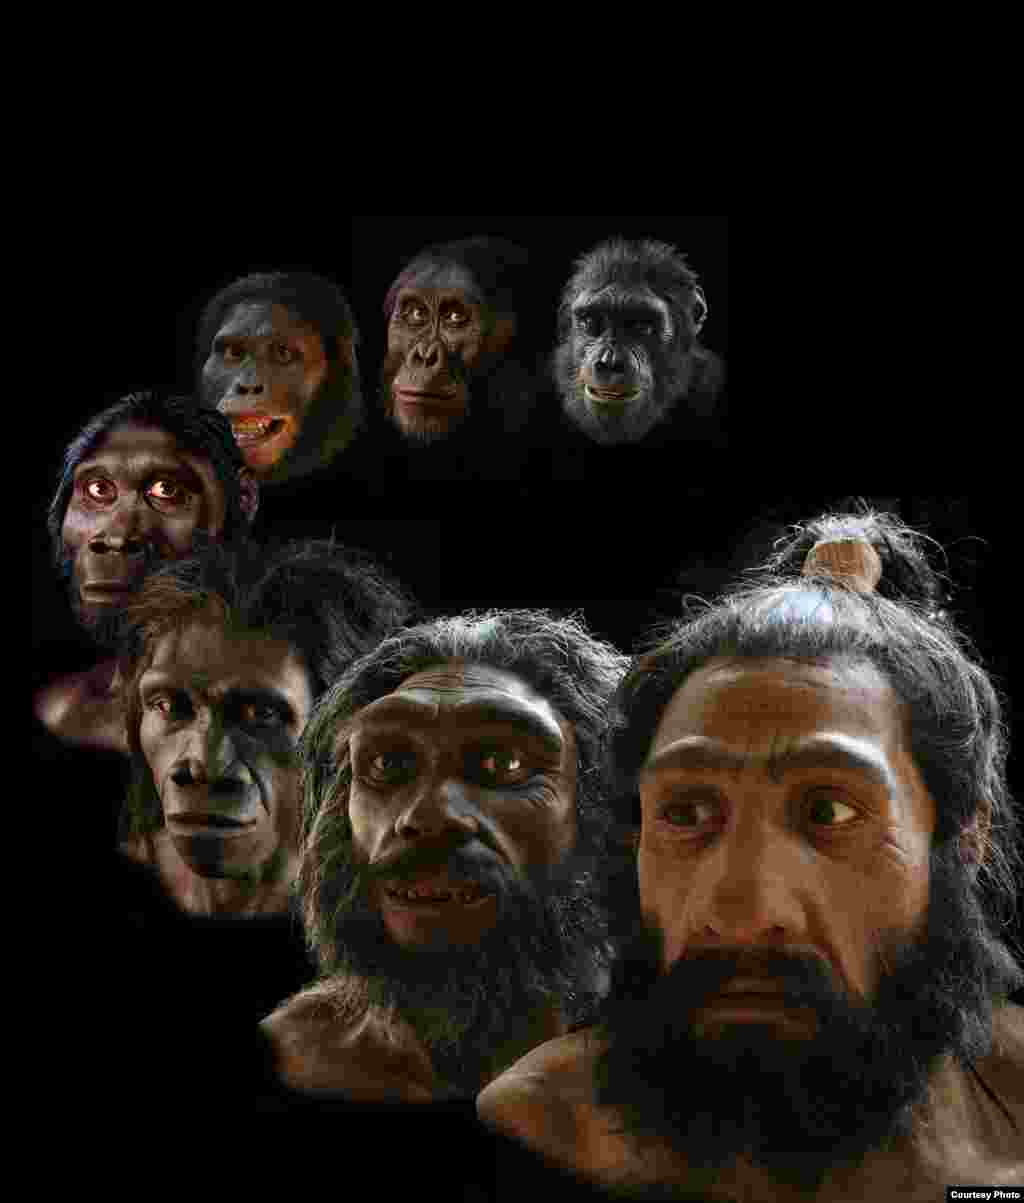 Rekonstruksi yang dilakukan seniman John Gurche mencakup lebih dari periode enam juta tahun evolusi manusia. (John Gurche, &ldquo;Shaping Humanity&rdquo;)